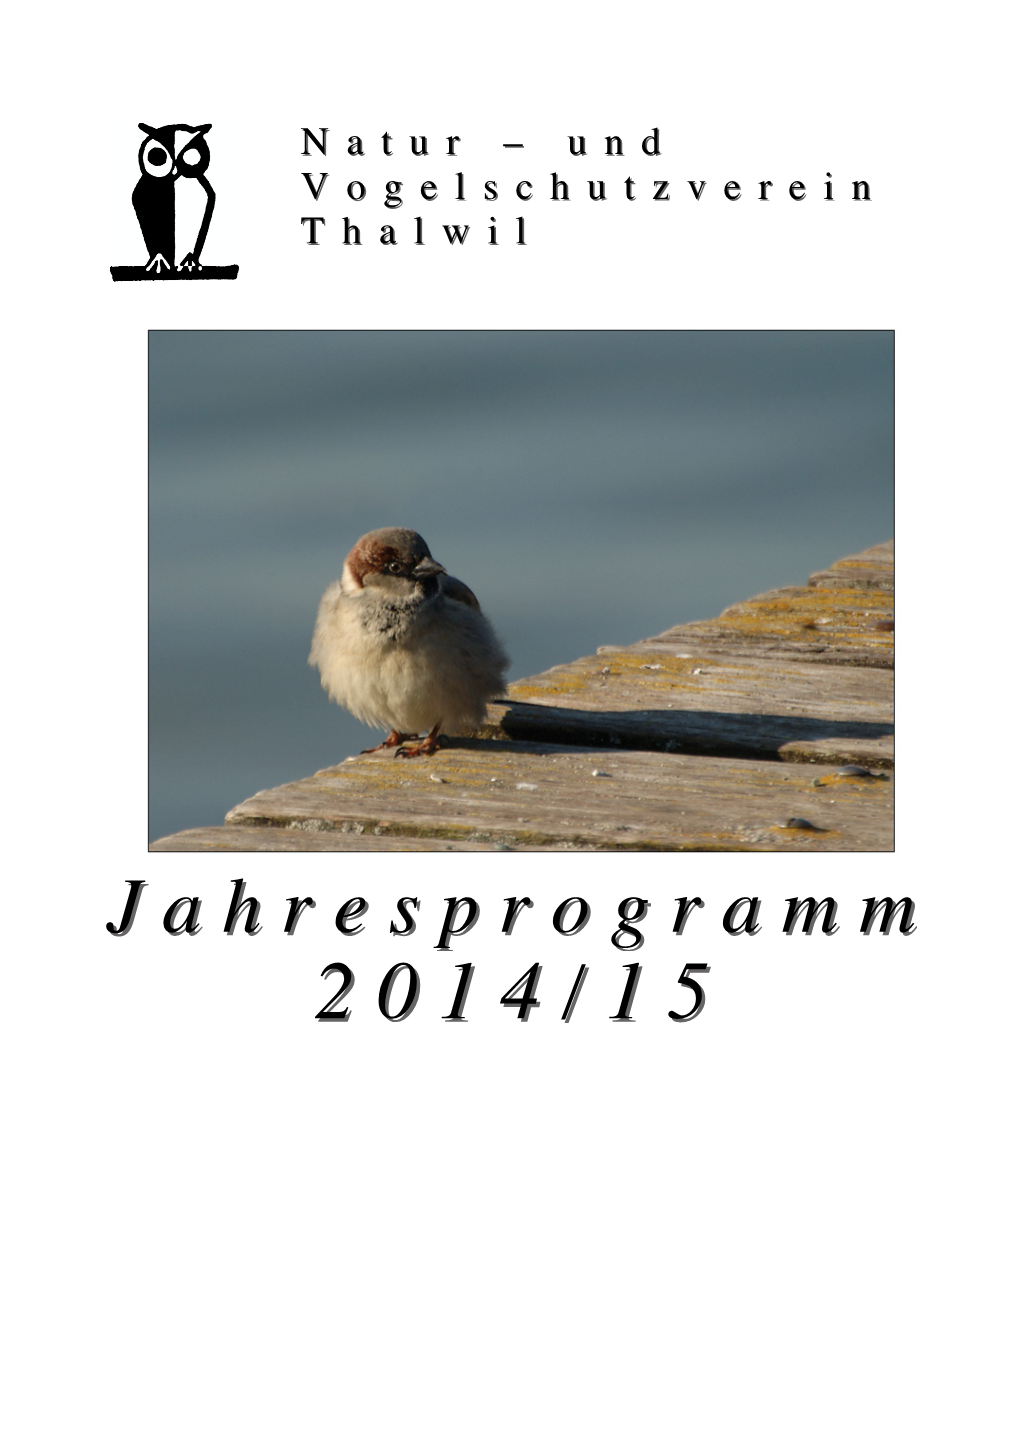 Jahresprogrammjahresprogramm 2012014/154/15 PP Proprogrammübersichtgrammübersicht